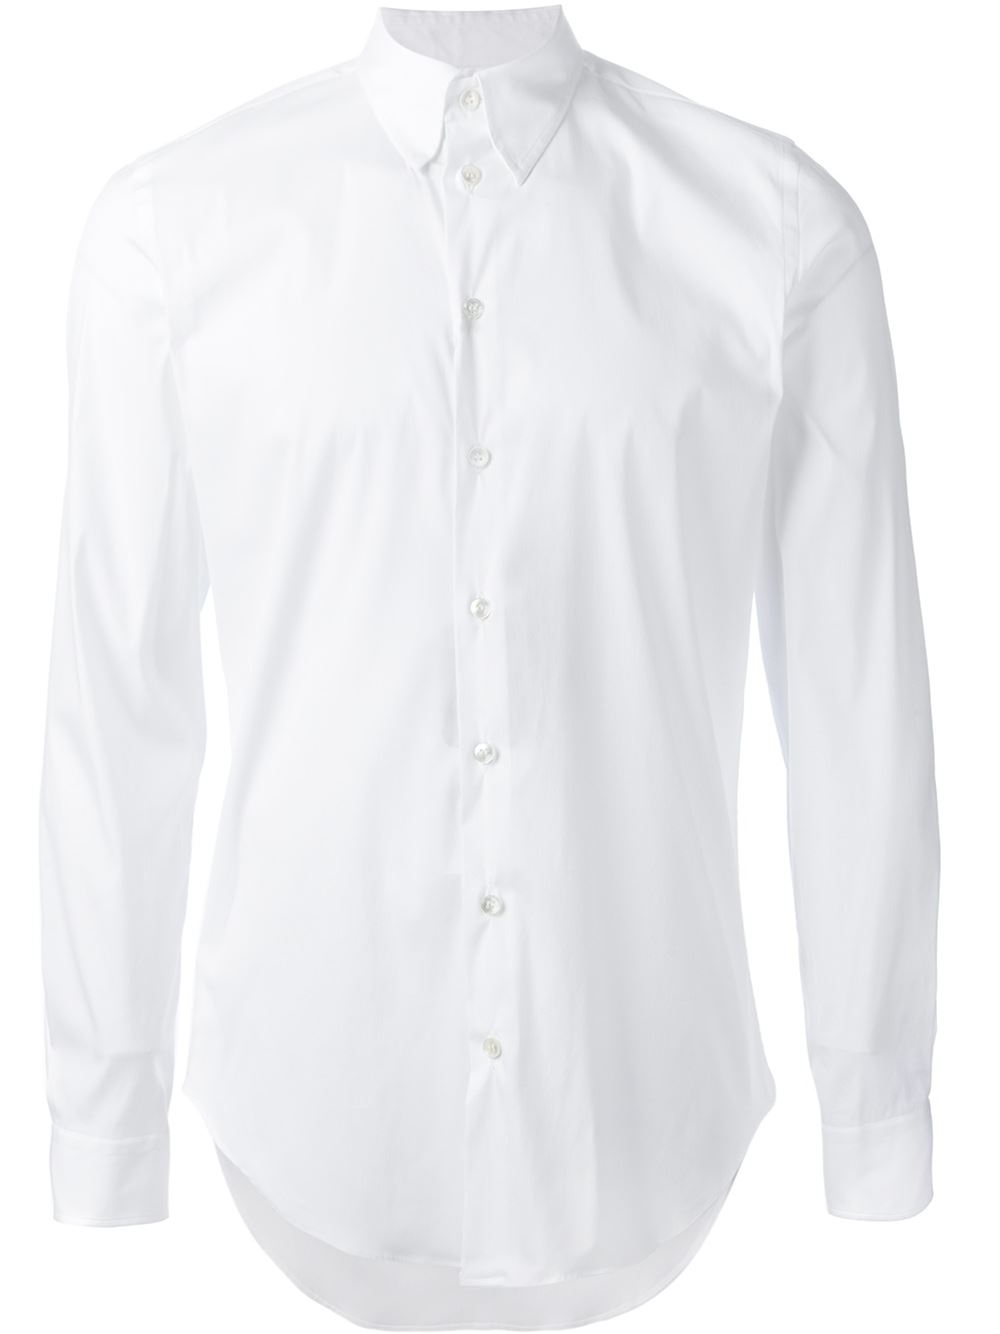 Lyst - Giorgio Armani Classic Shirt in White for Men